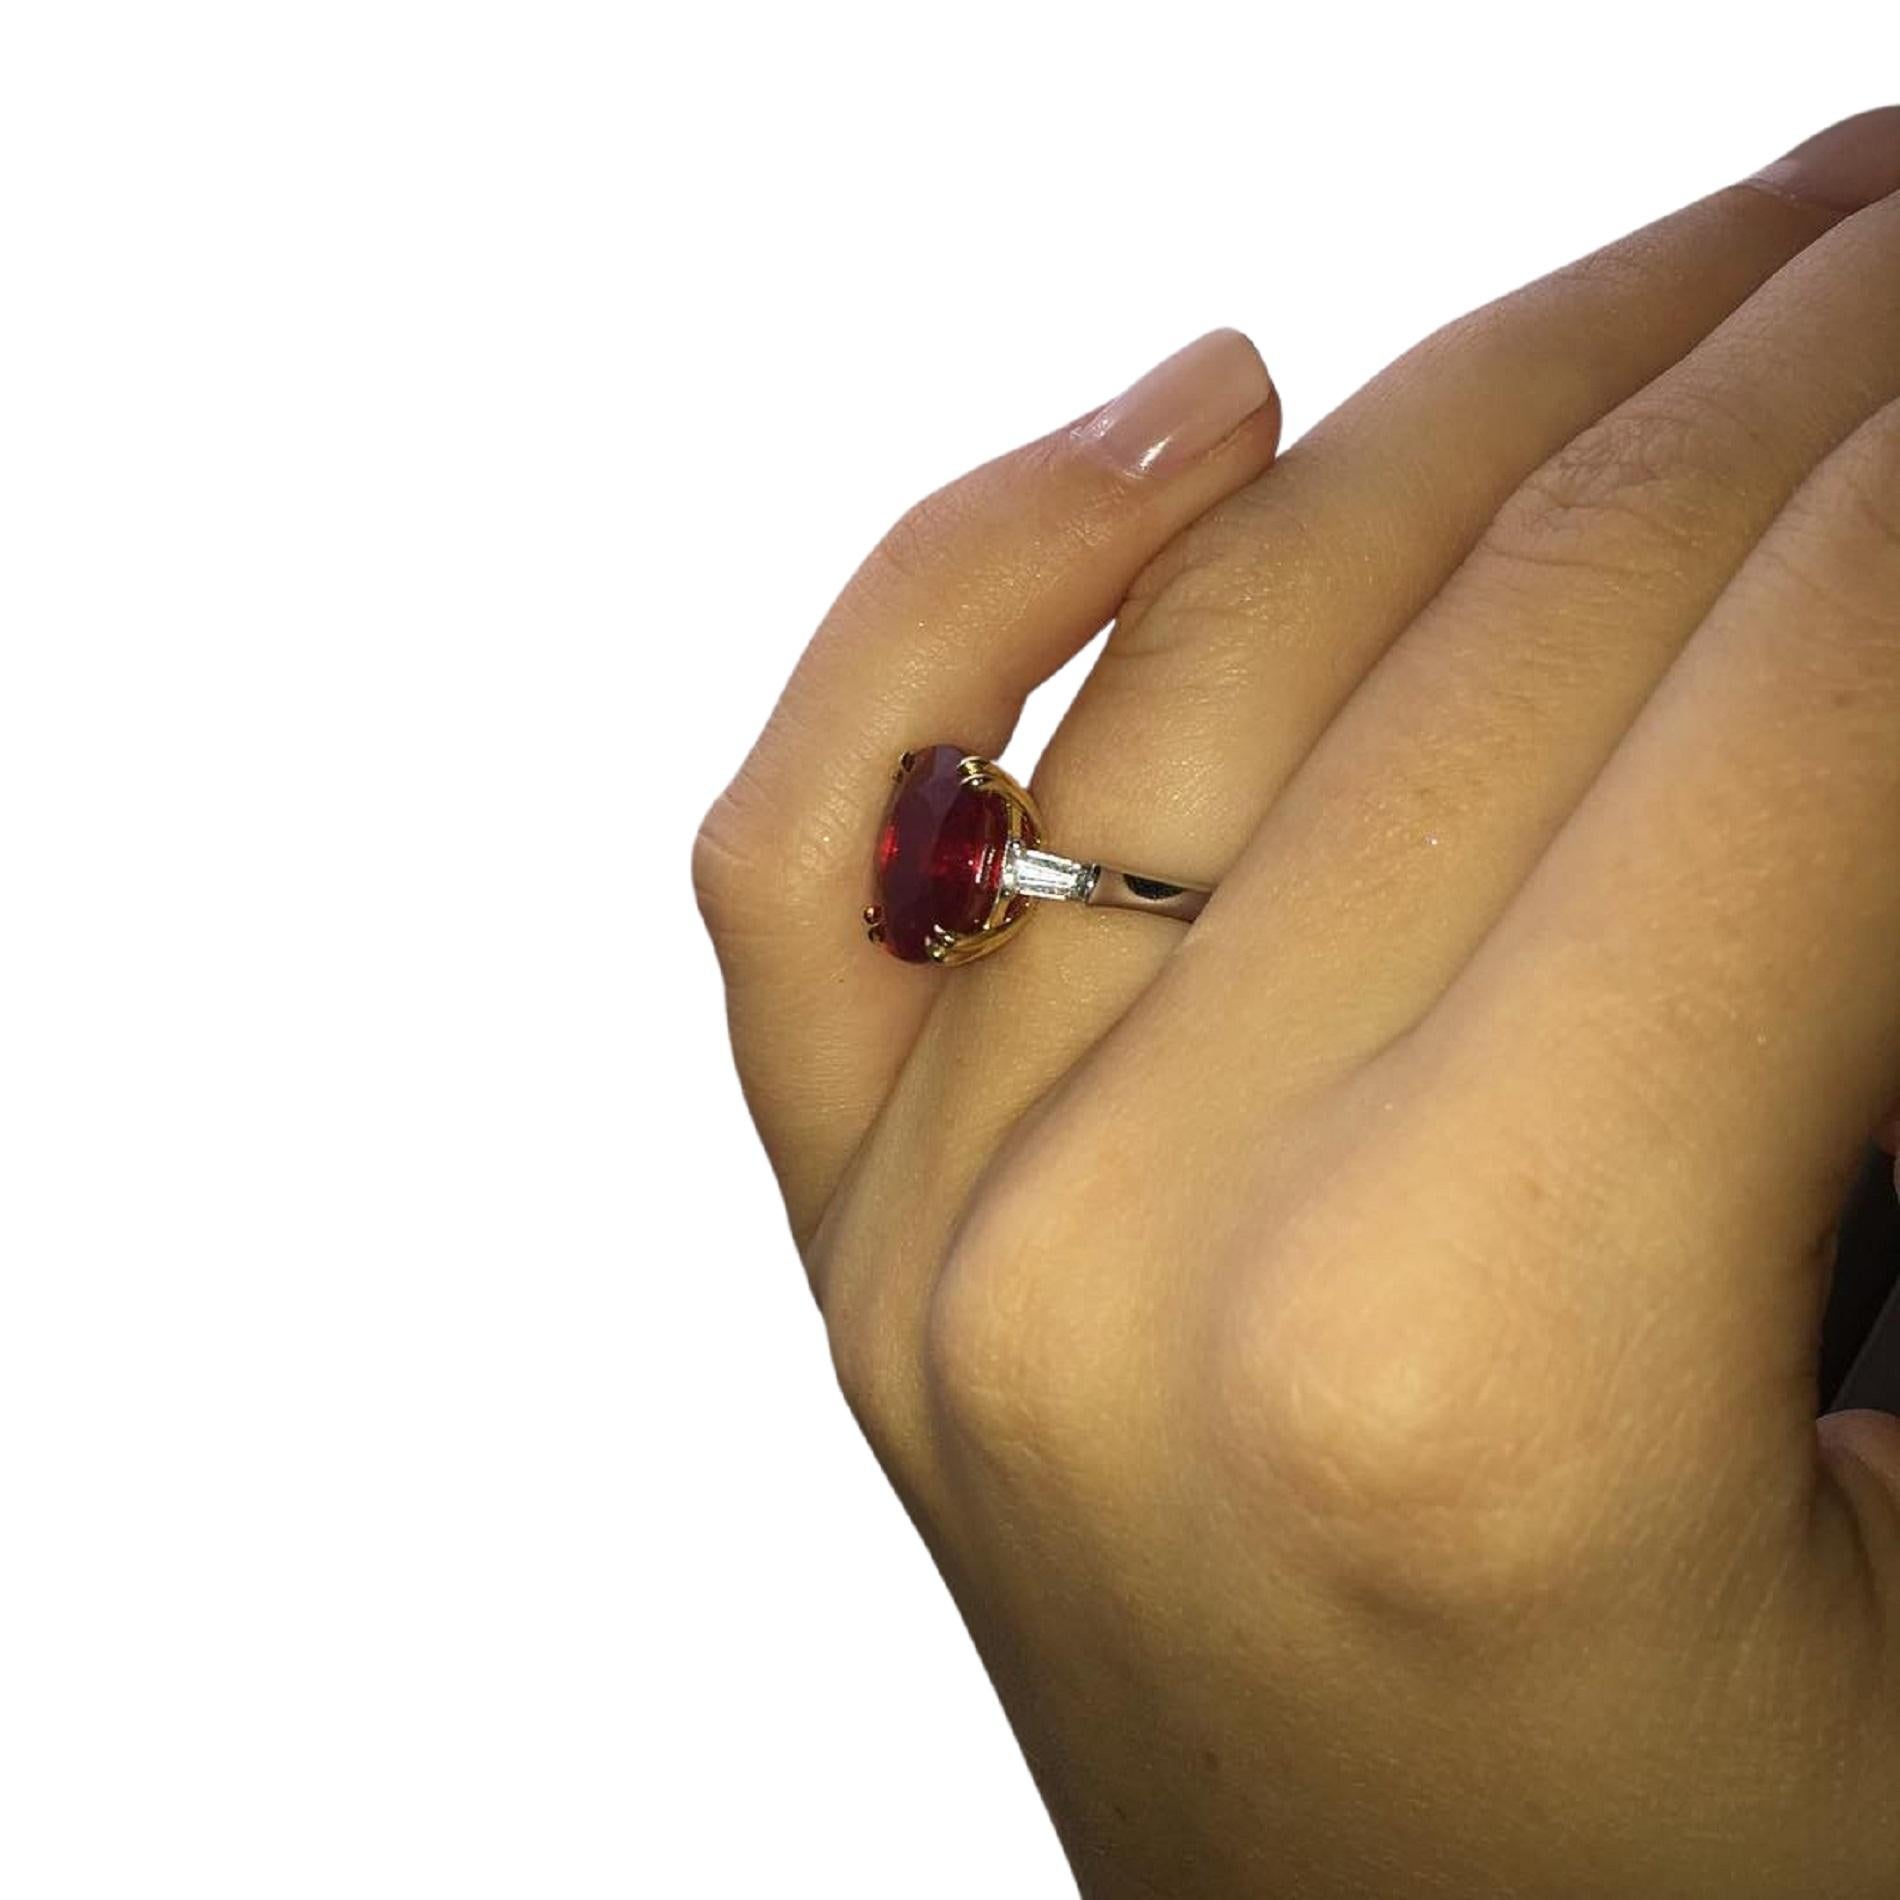 4 carat ruby ring